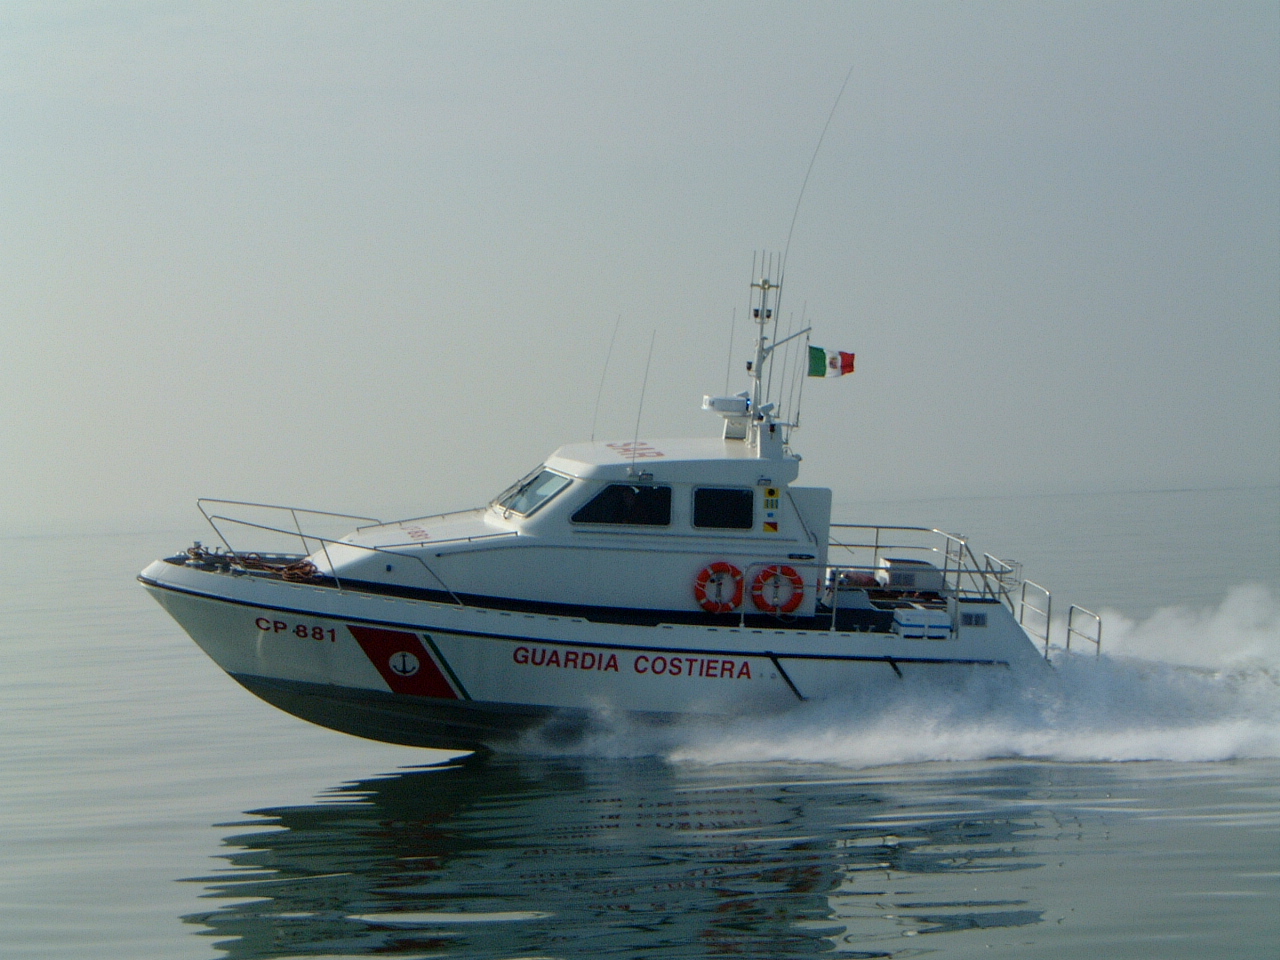 SRV800, Search and Rescue, Cantiere Navale Vittoria